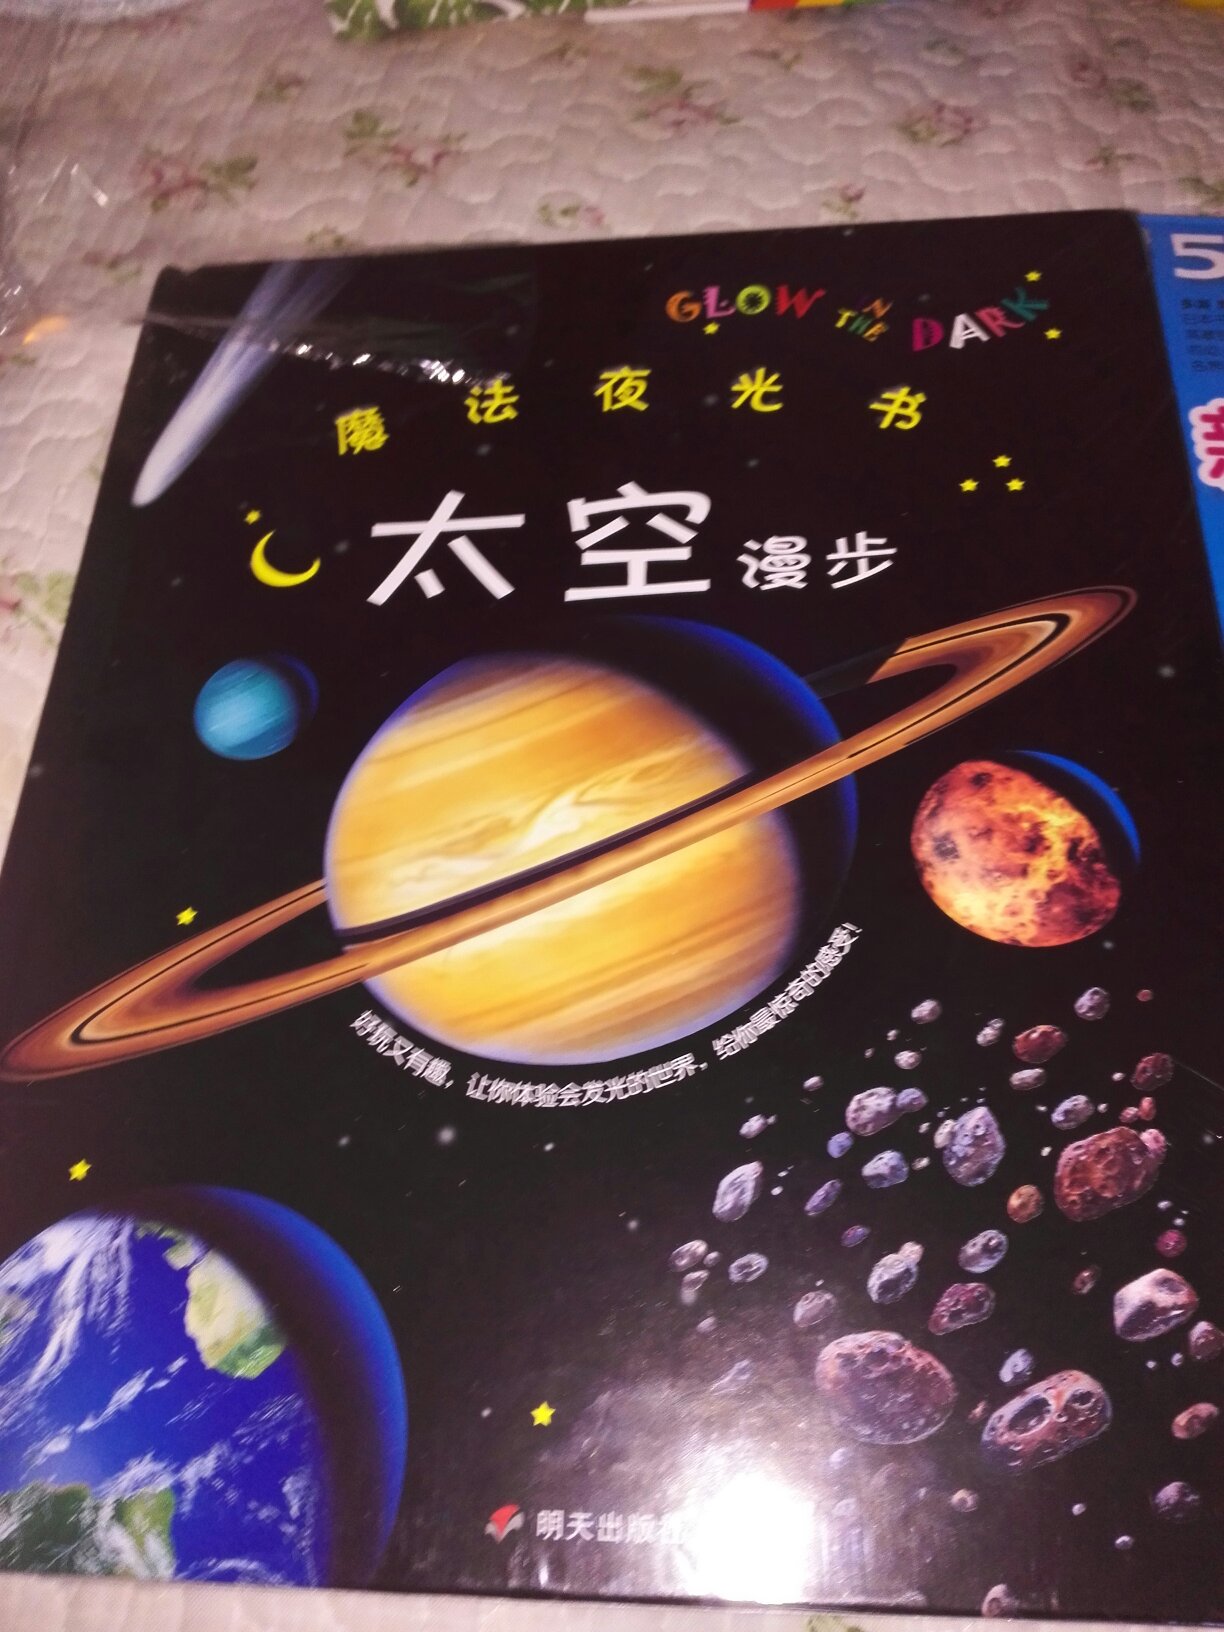 一套两册，男孩子更喜欢探讨和研究天文地理。